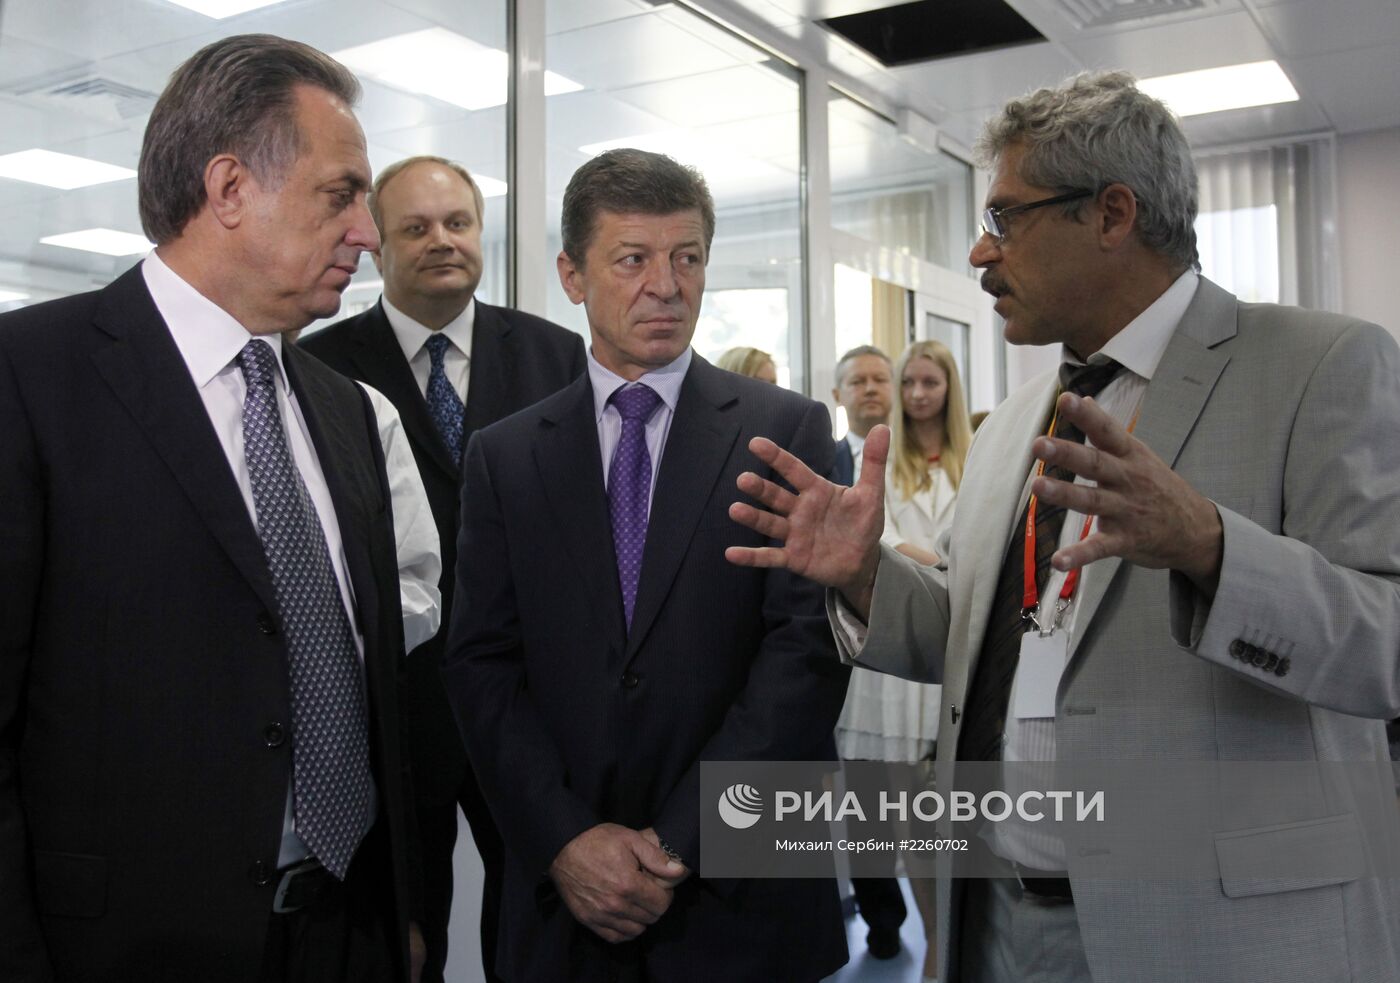 Первый аккредитованный WADA антидопинговый центр открыт в Москве